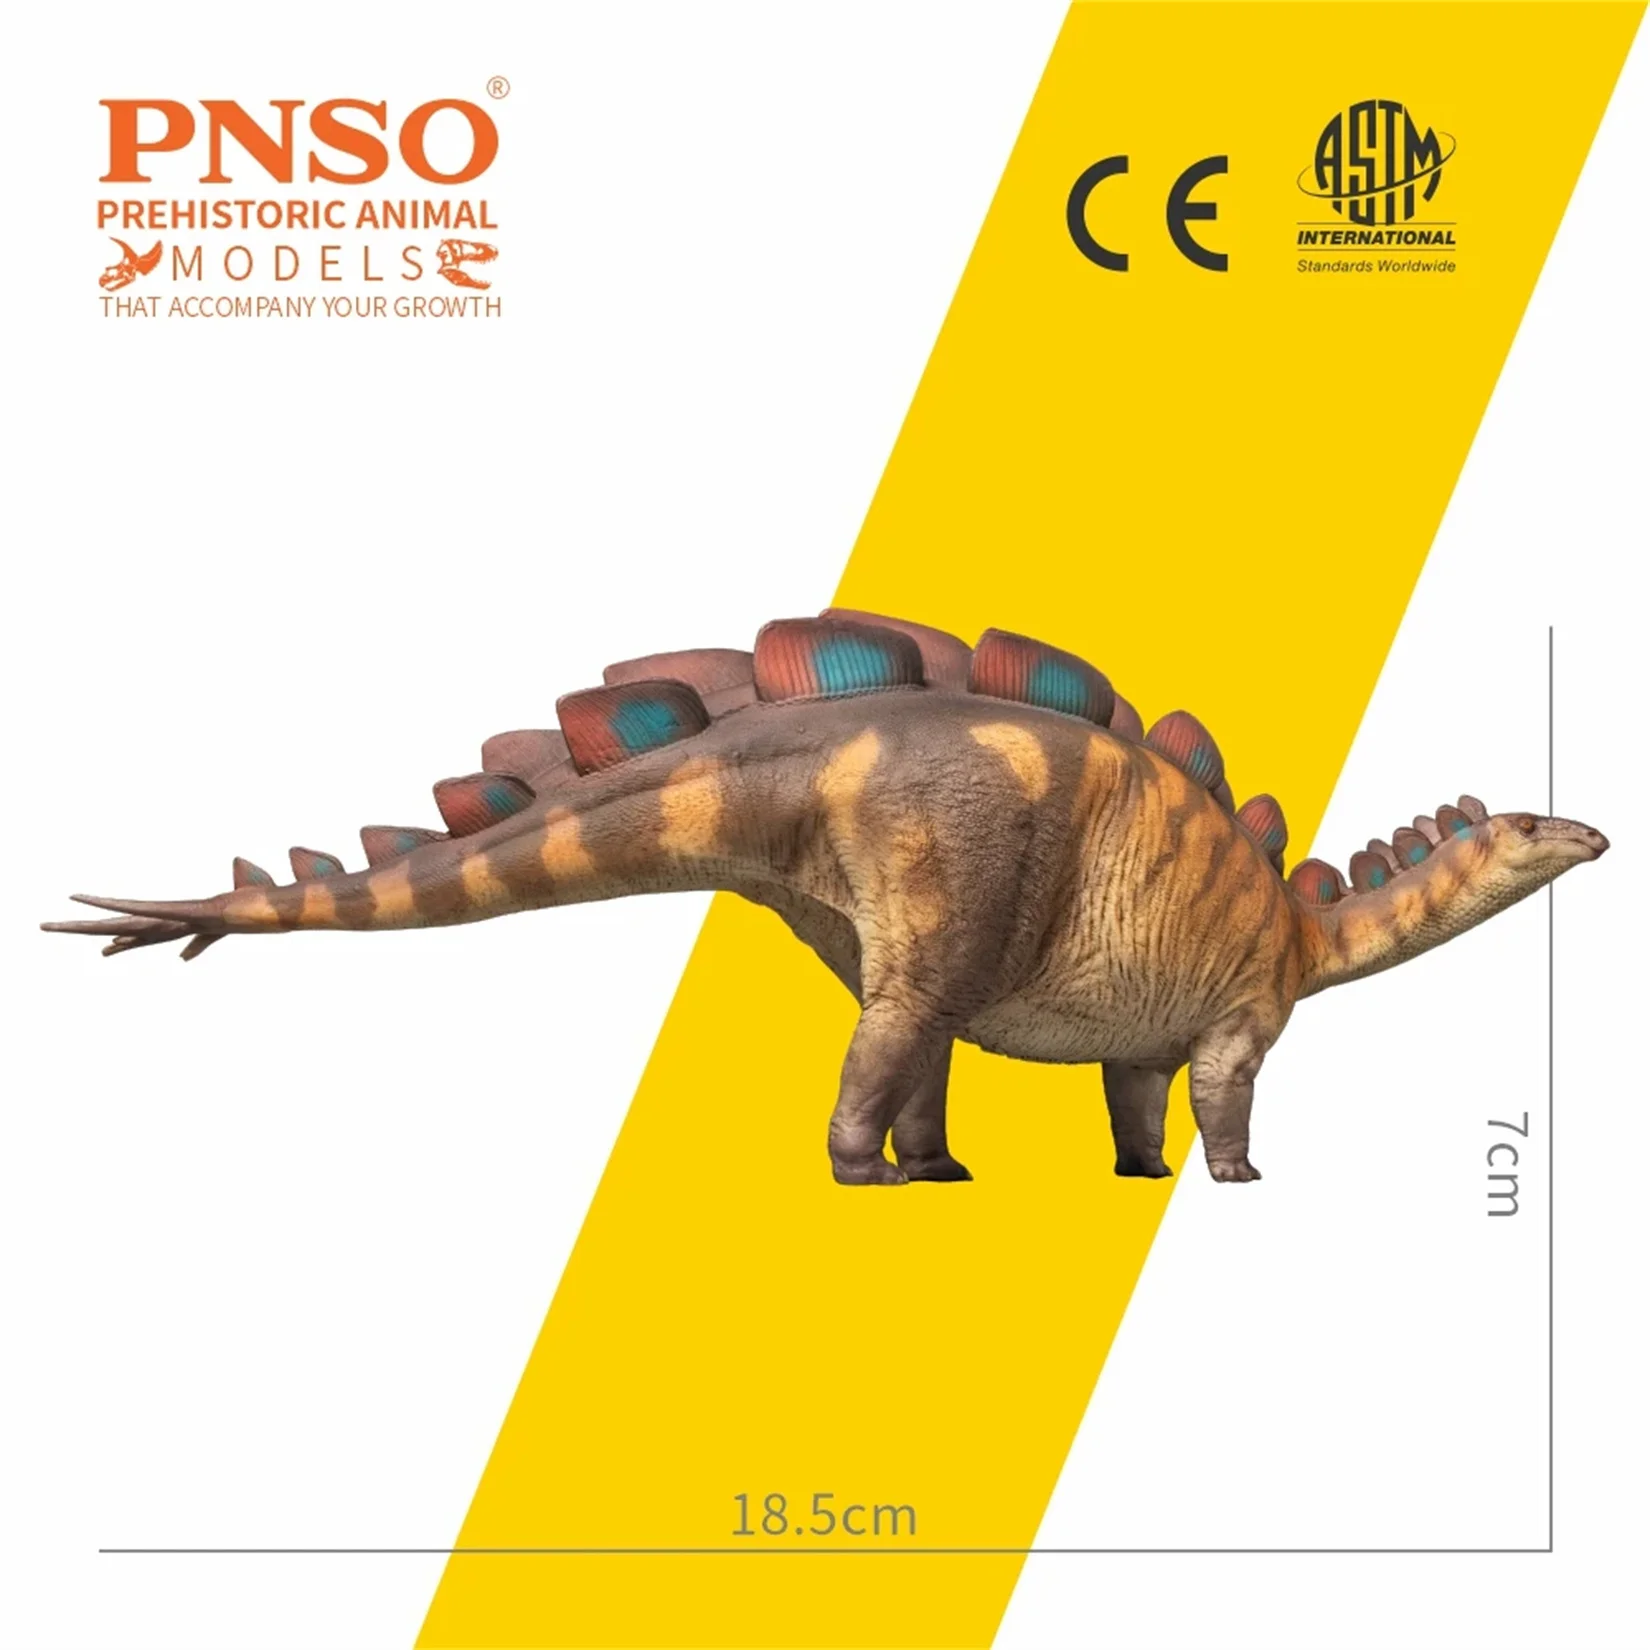 Statue scientifique de dinosaure, modèle de stégosaure, décoration de scène animale préhistorique, cadeau de collection, PNbuc82, Wuerhosaurus Xilin